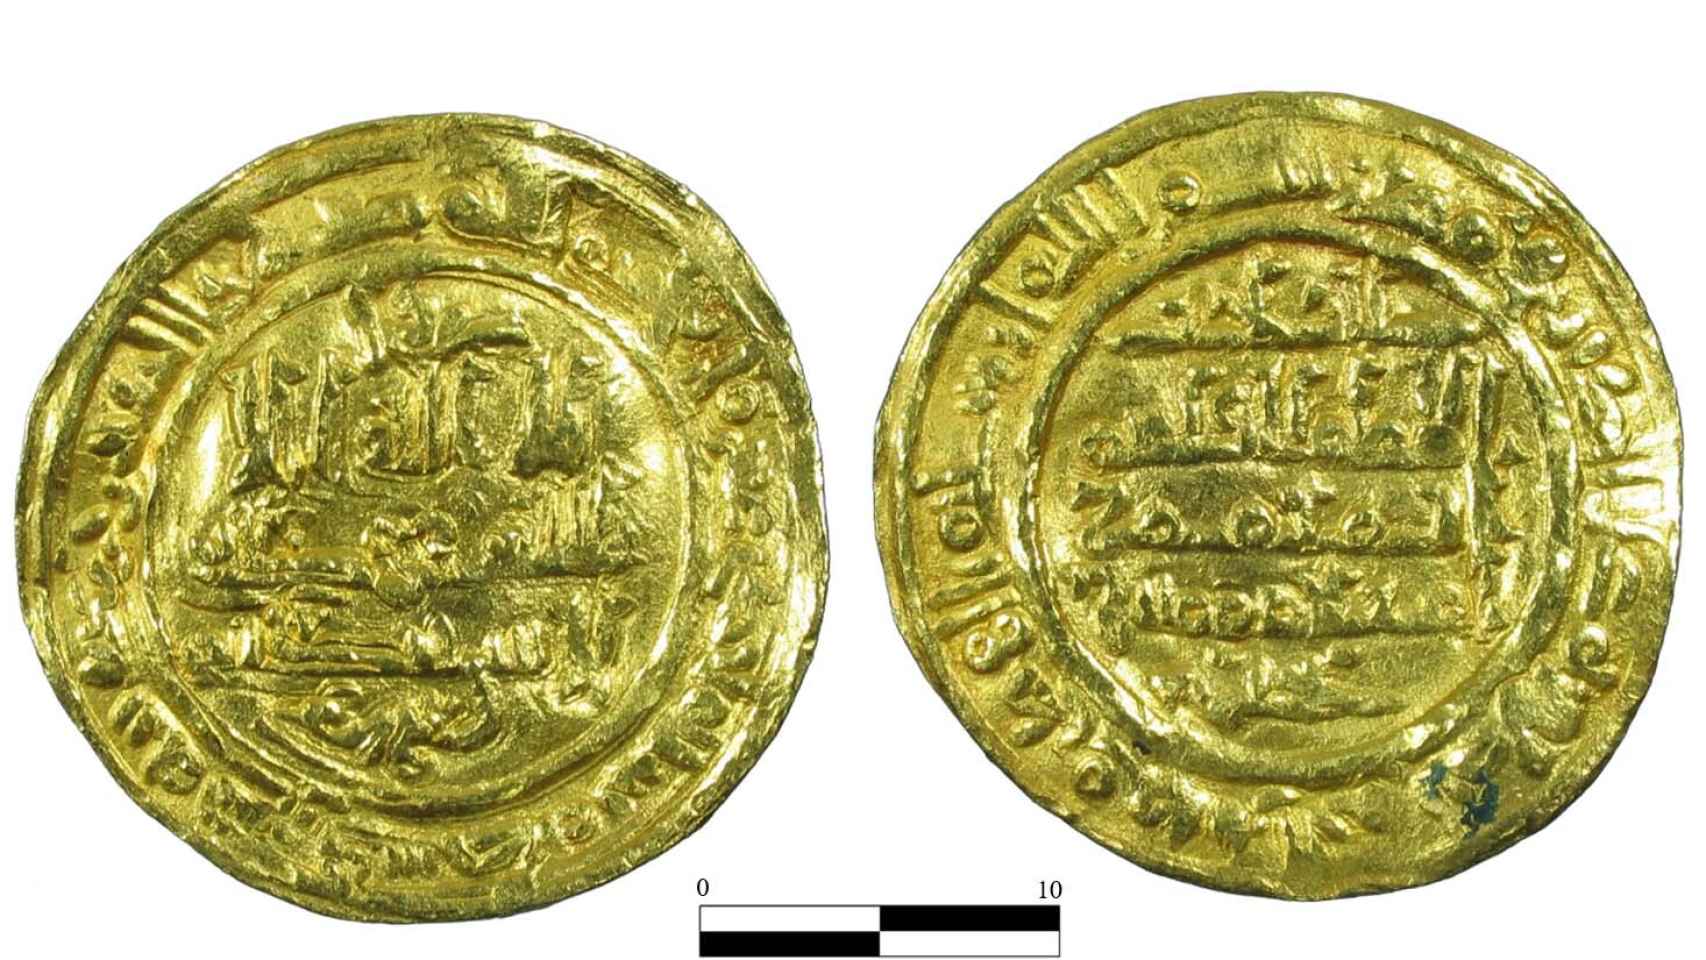 El otro dinar de Zaragoza del año 1020-1021.